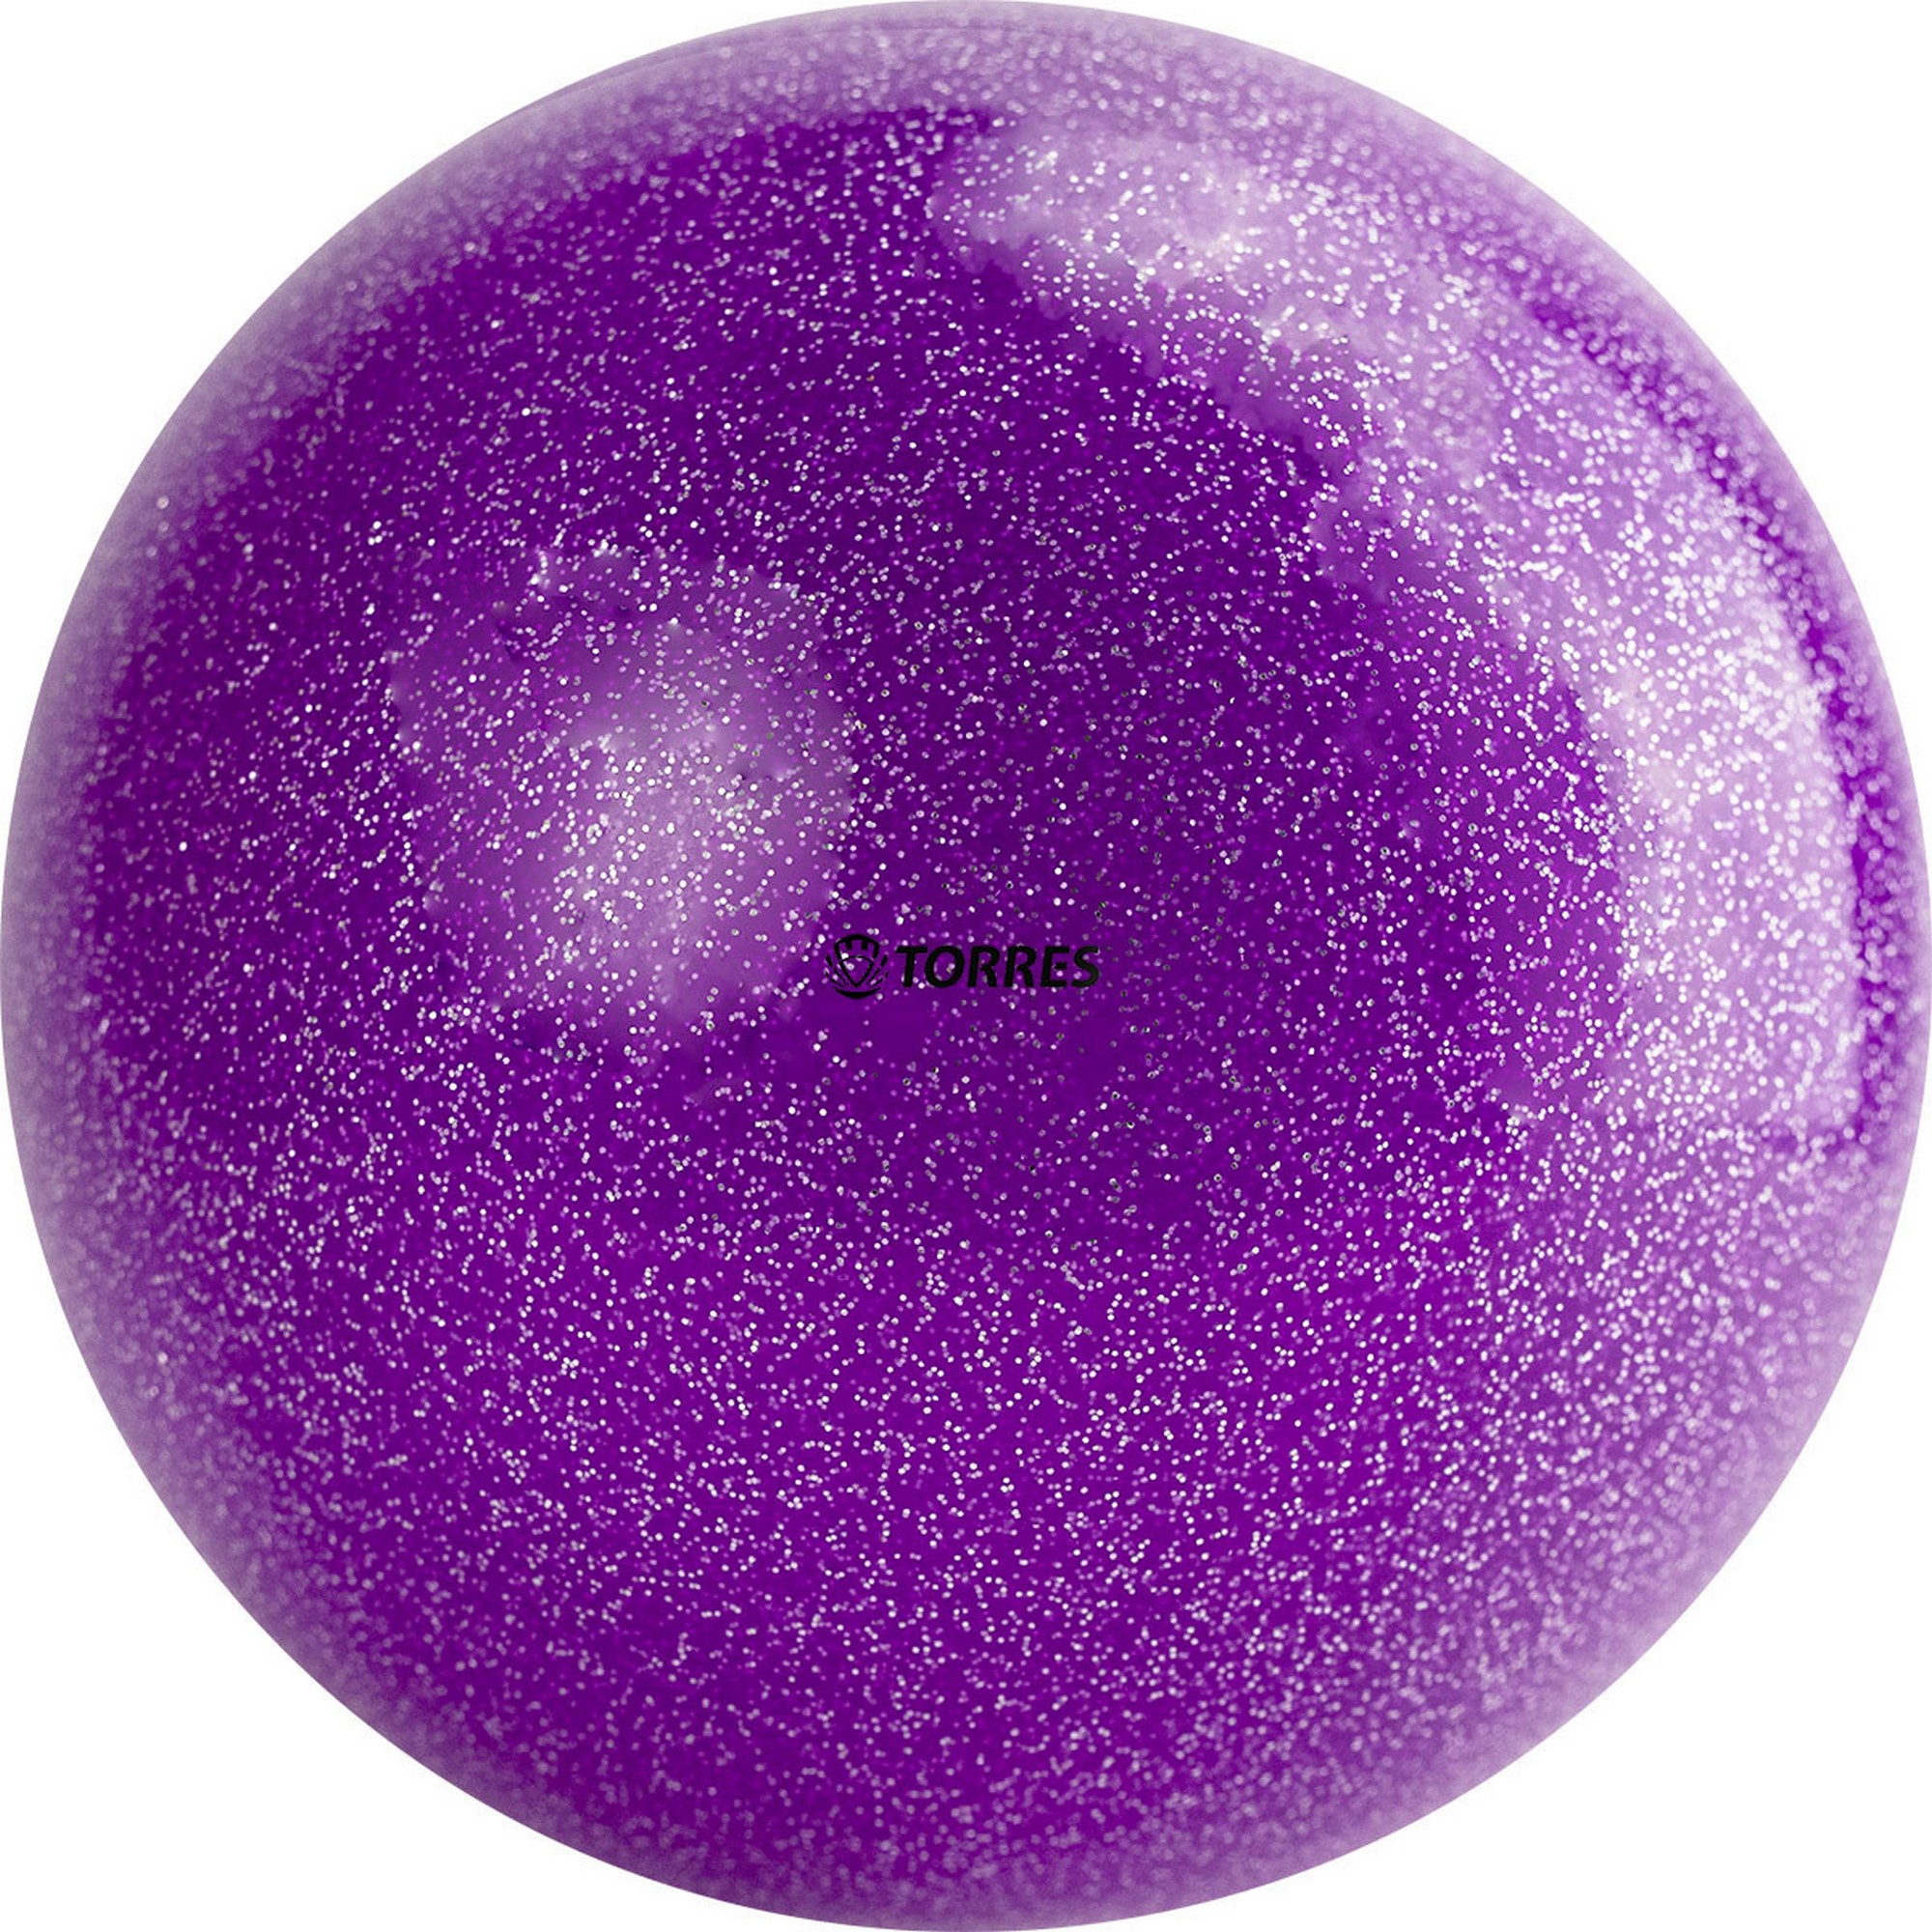 Мяч для художественной гимнастики d15см Torres ПВХ AGP-15-04 фиолетовый с блестками 2000_2000